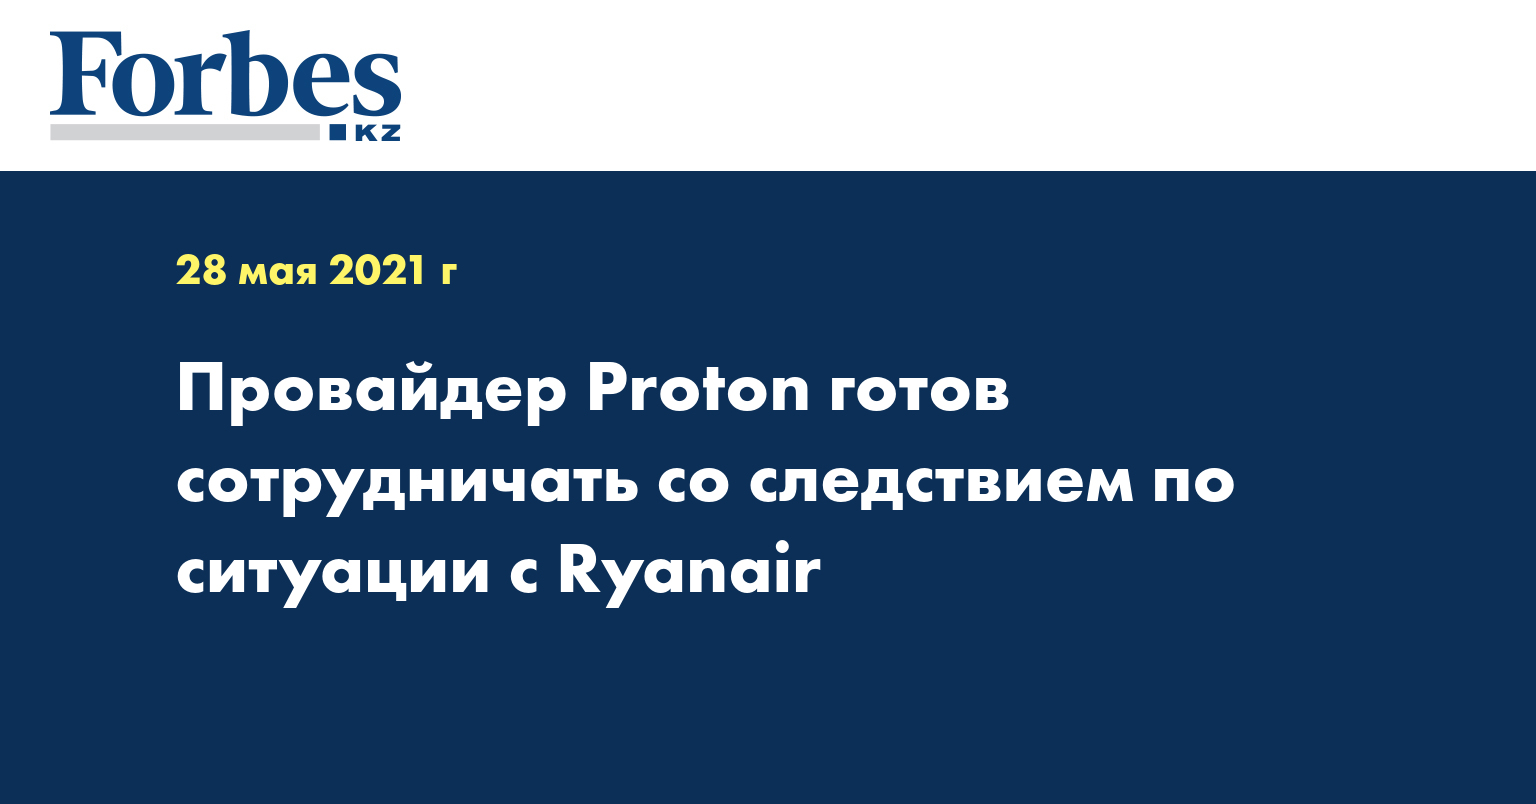 Провайдер Proton готов сотрудничать со следствием по ситуации с Ryanair